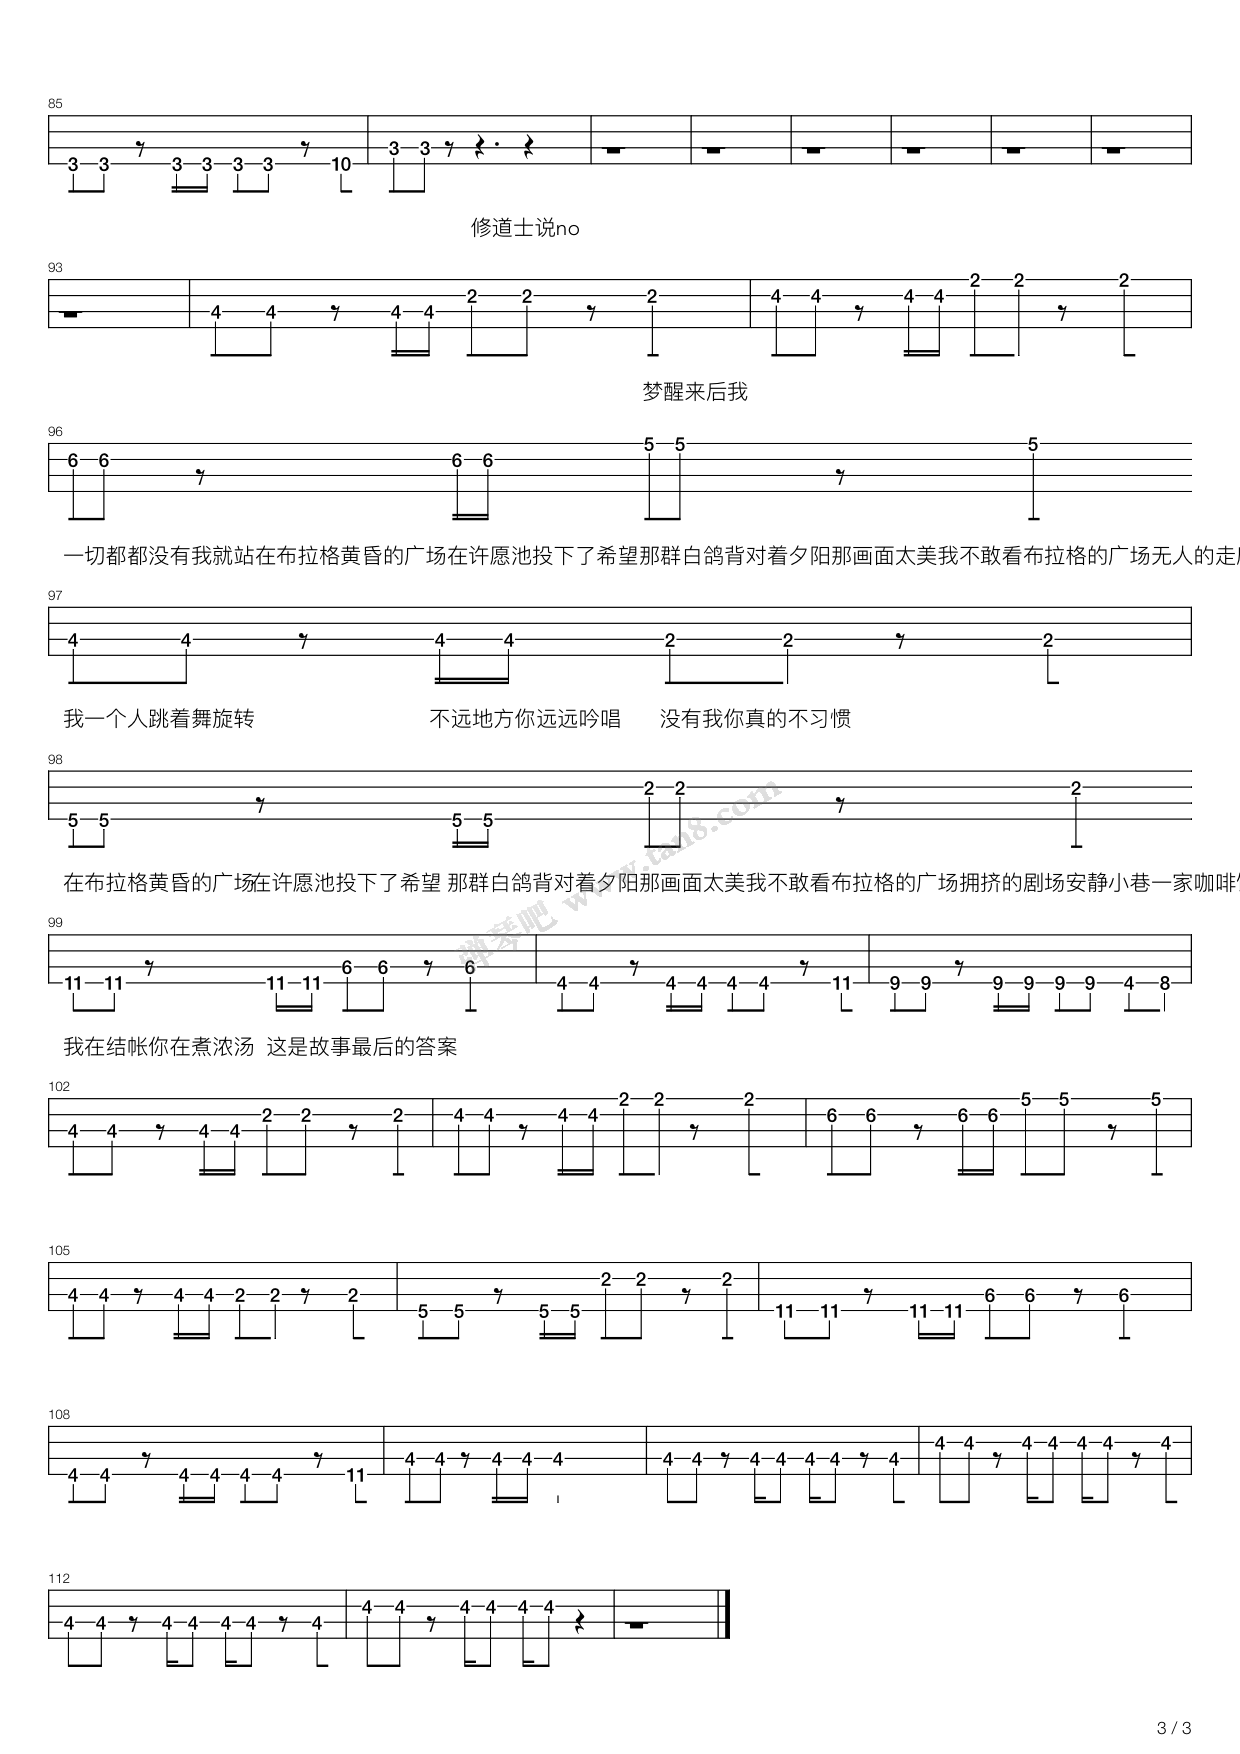 布拉格广场-蔡依林-周杰伦五线谱预览3-钢琴谱文件（五线谱、双手简谱、数字谱、Midi、PDF）免费下载